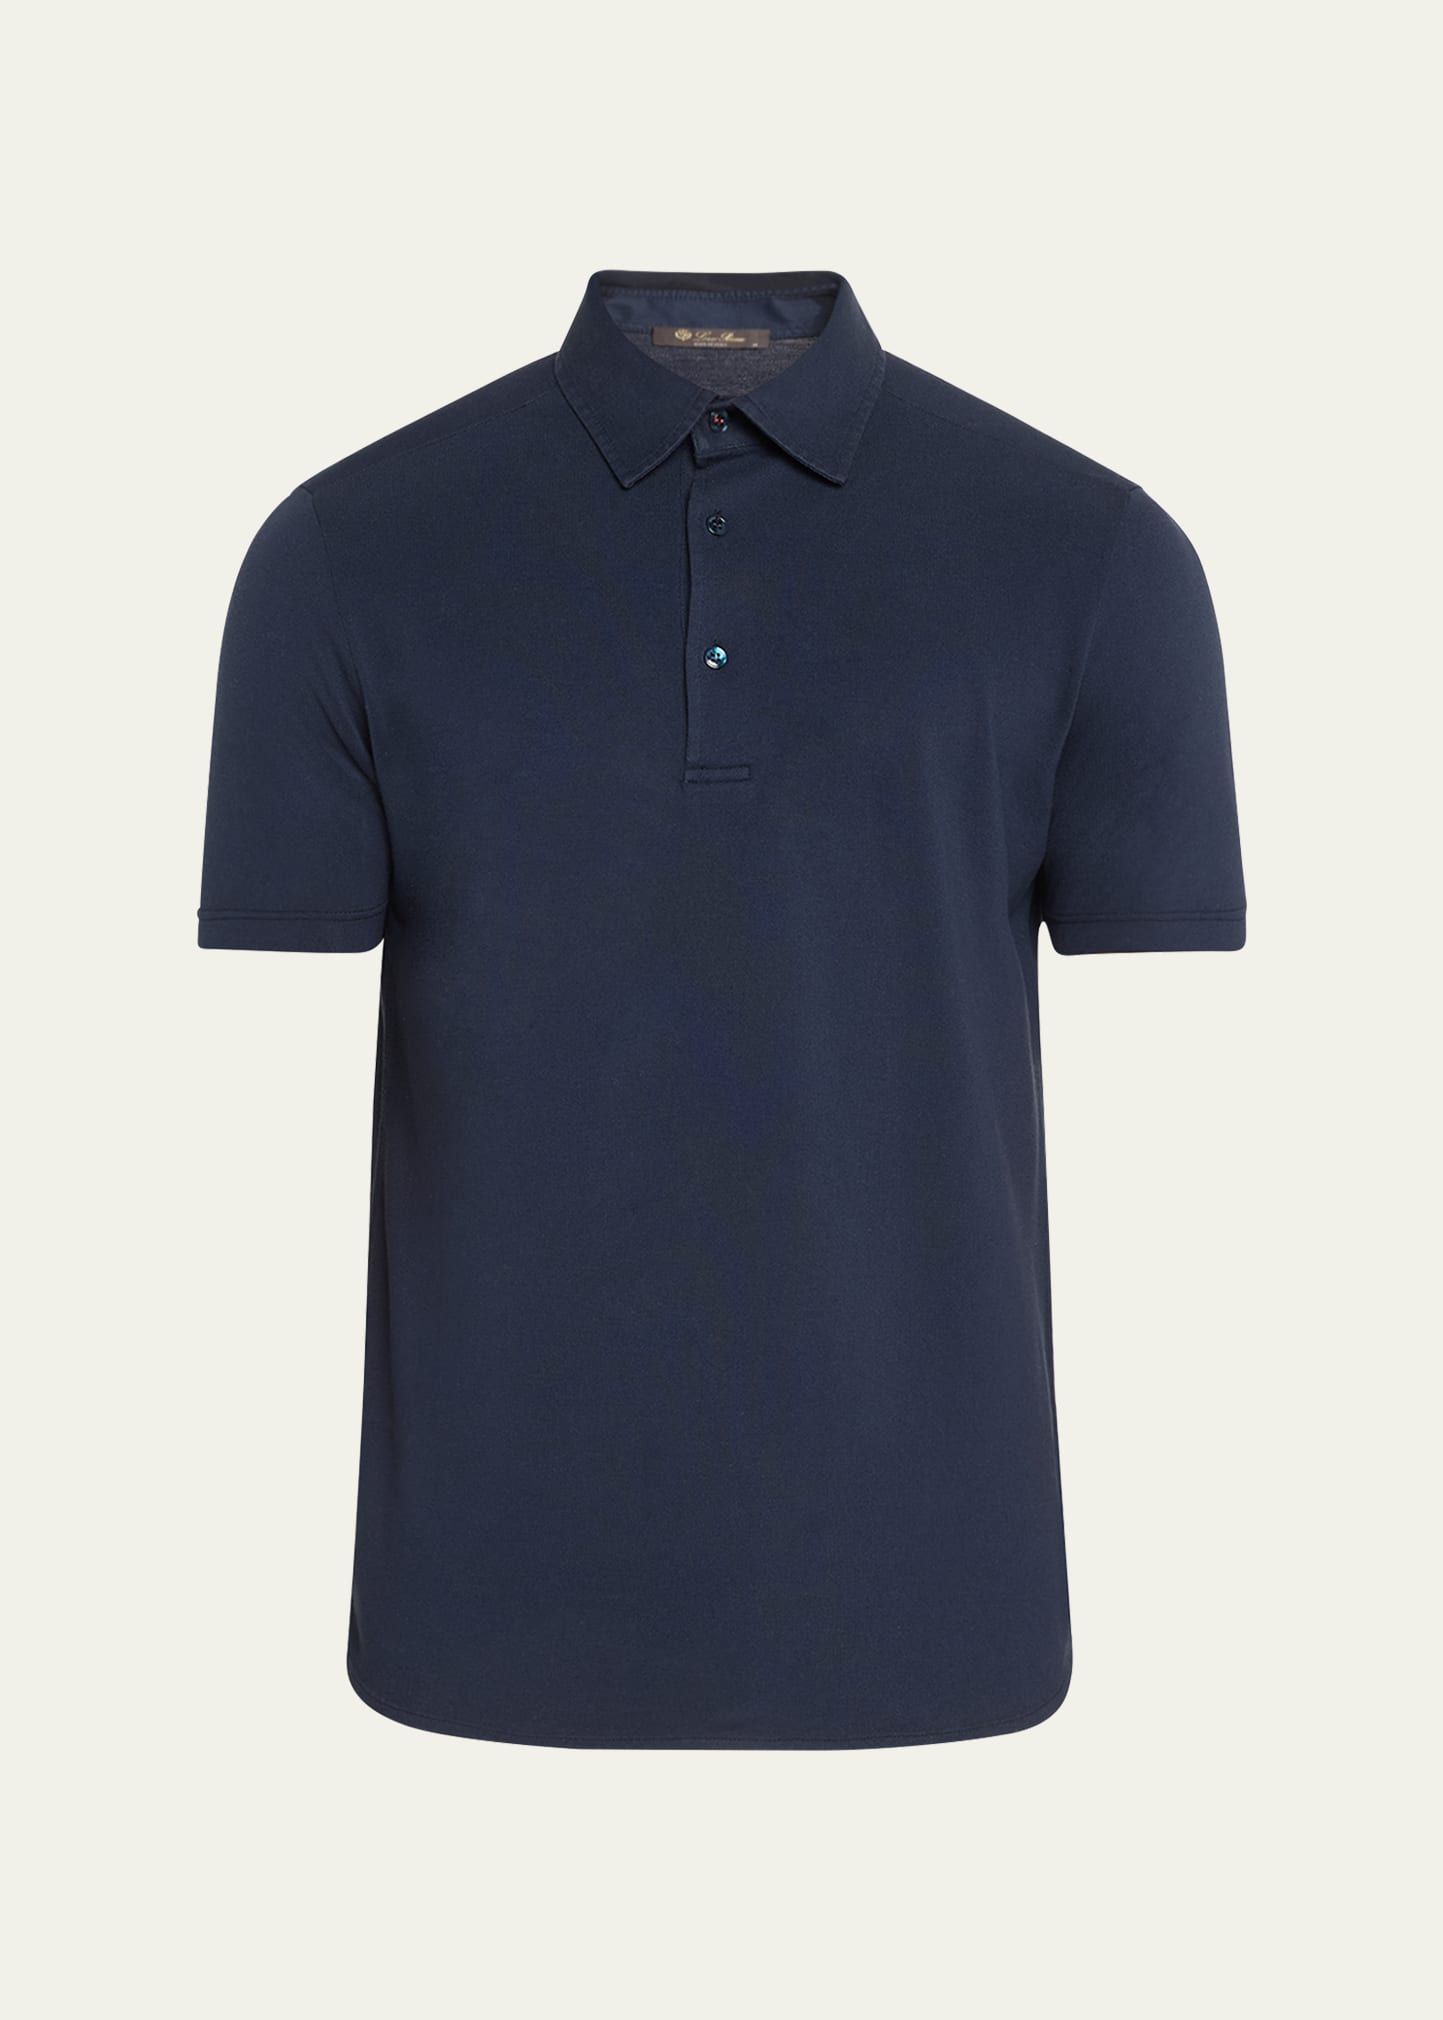 Loro Piana Men's Cotton Pique Polo Shirt In Blue Navy